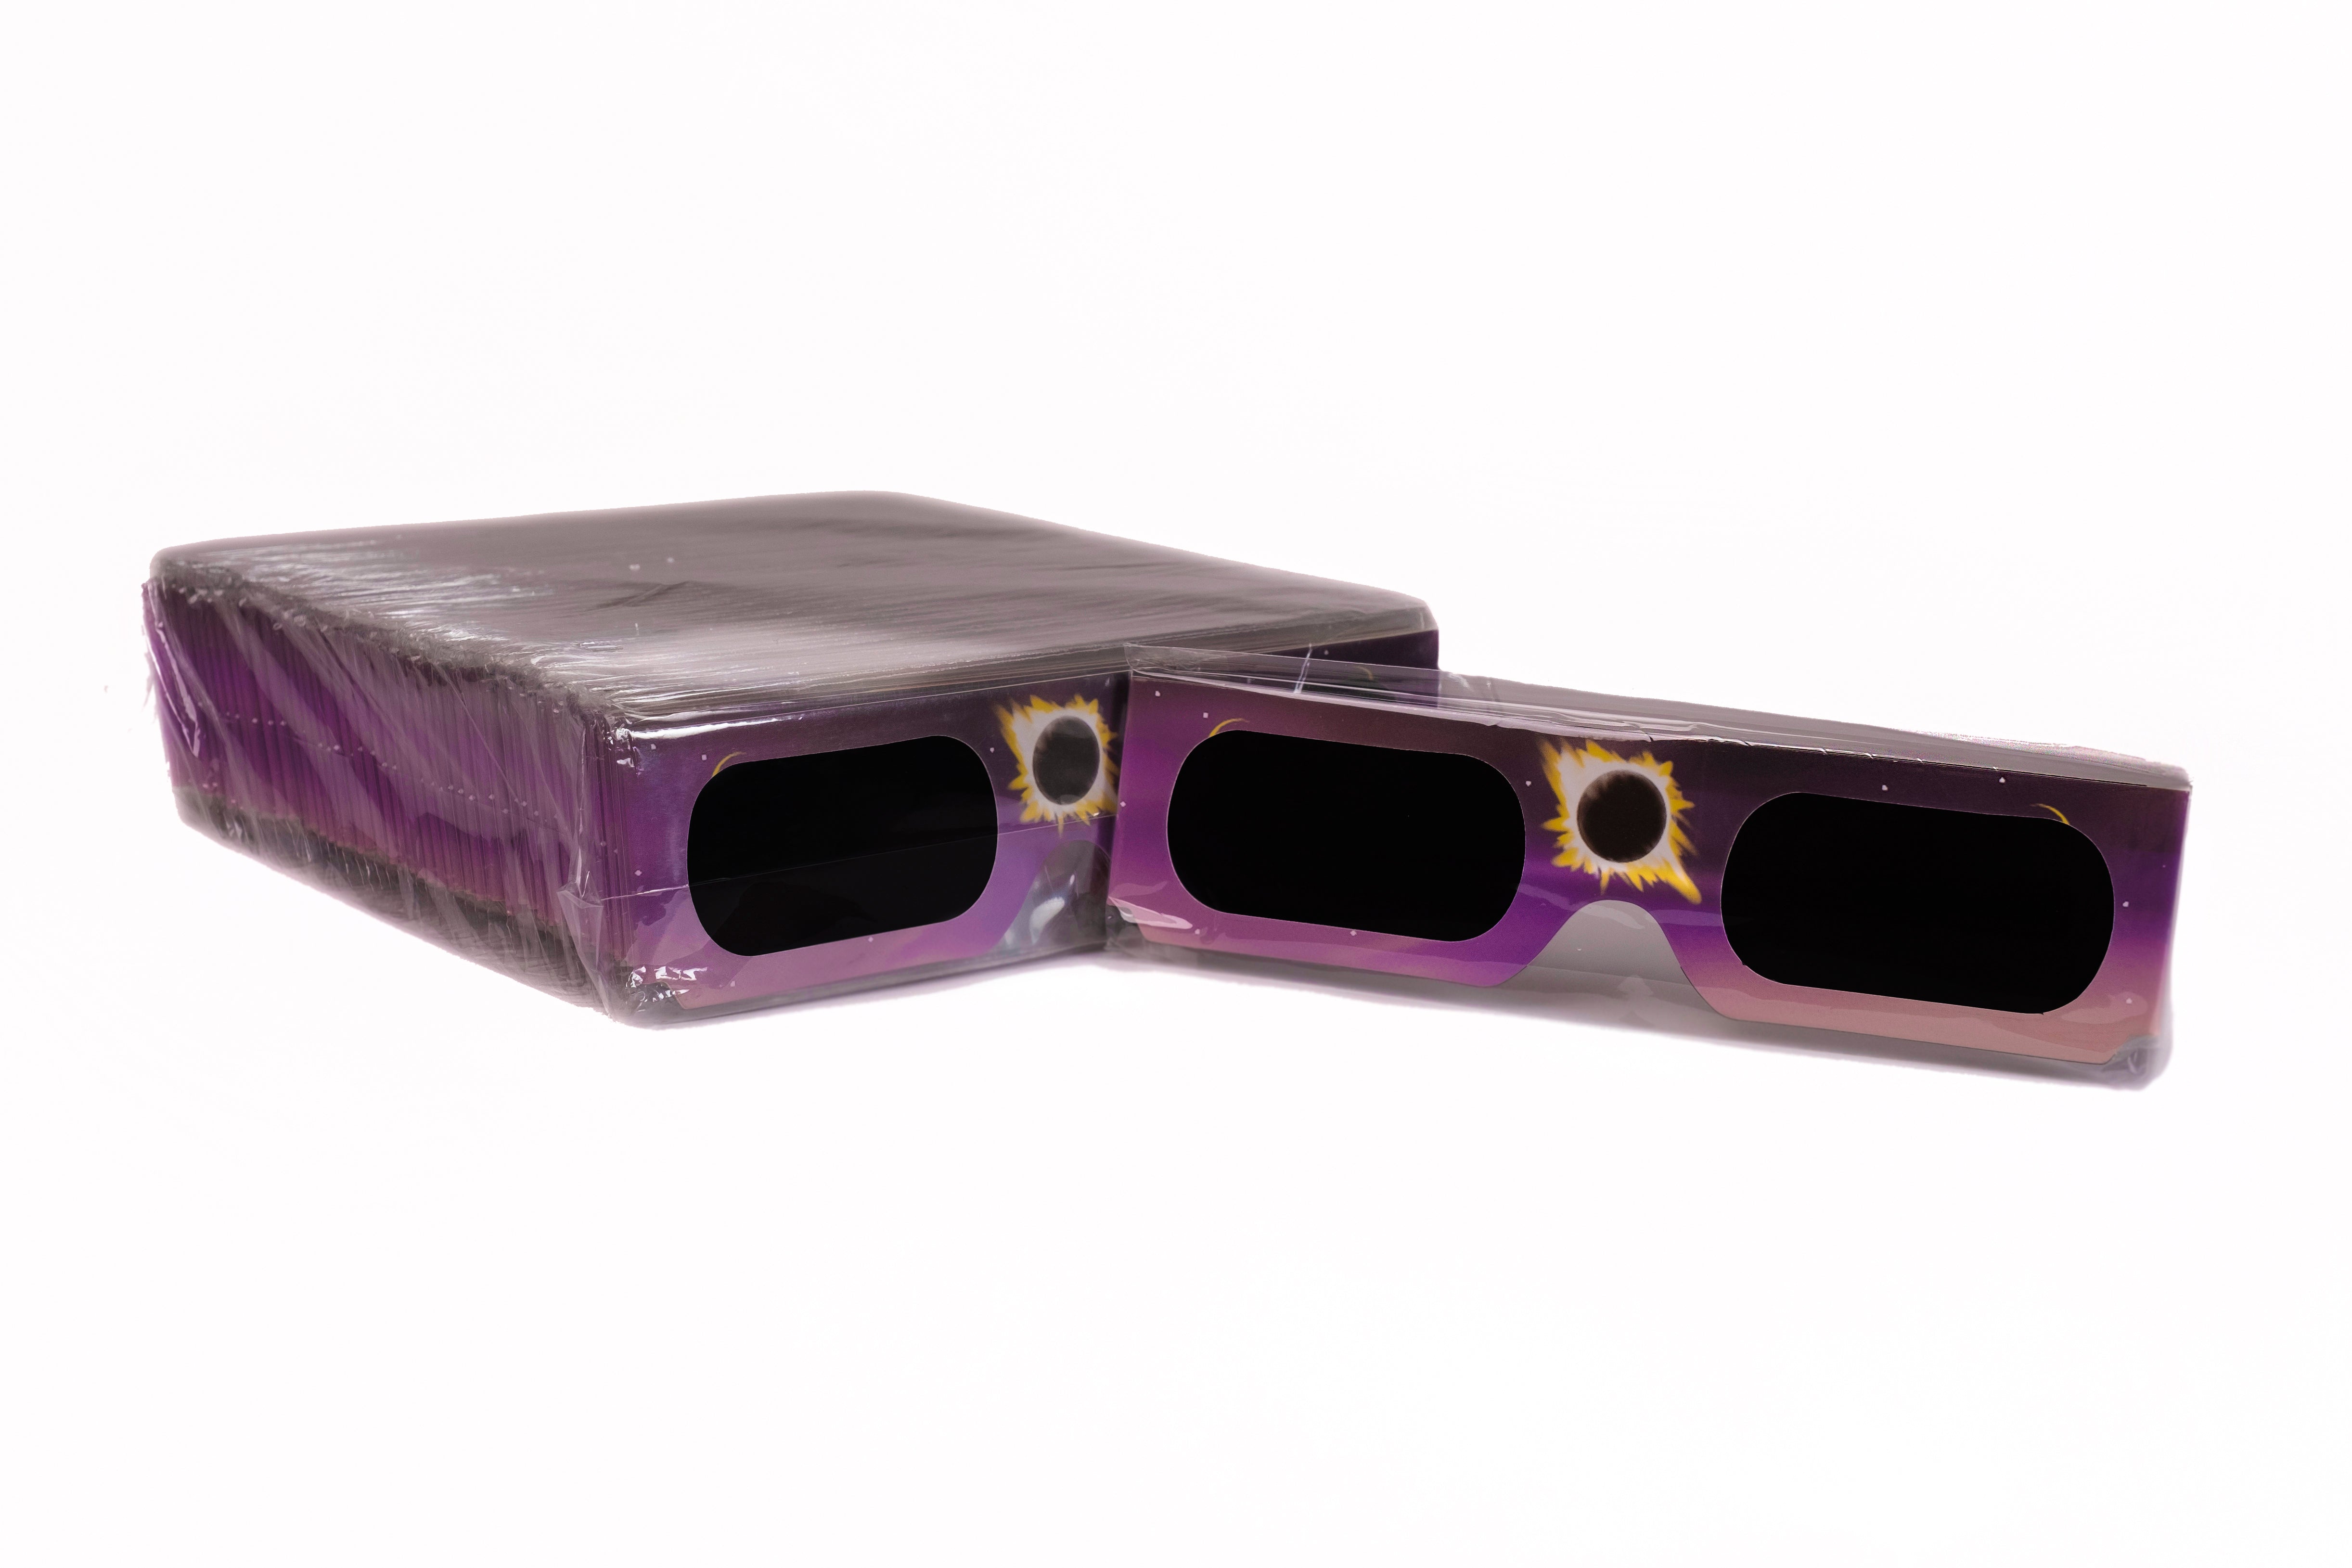 US Solar Eclipse Glasses for 2023-24, bulk purchase, 50-packs